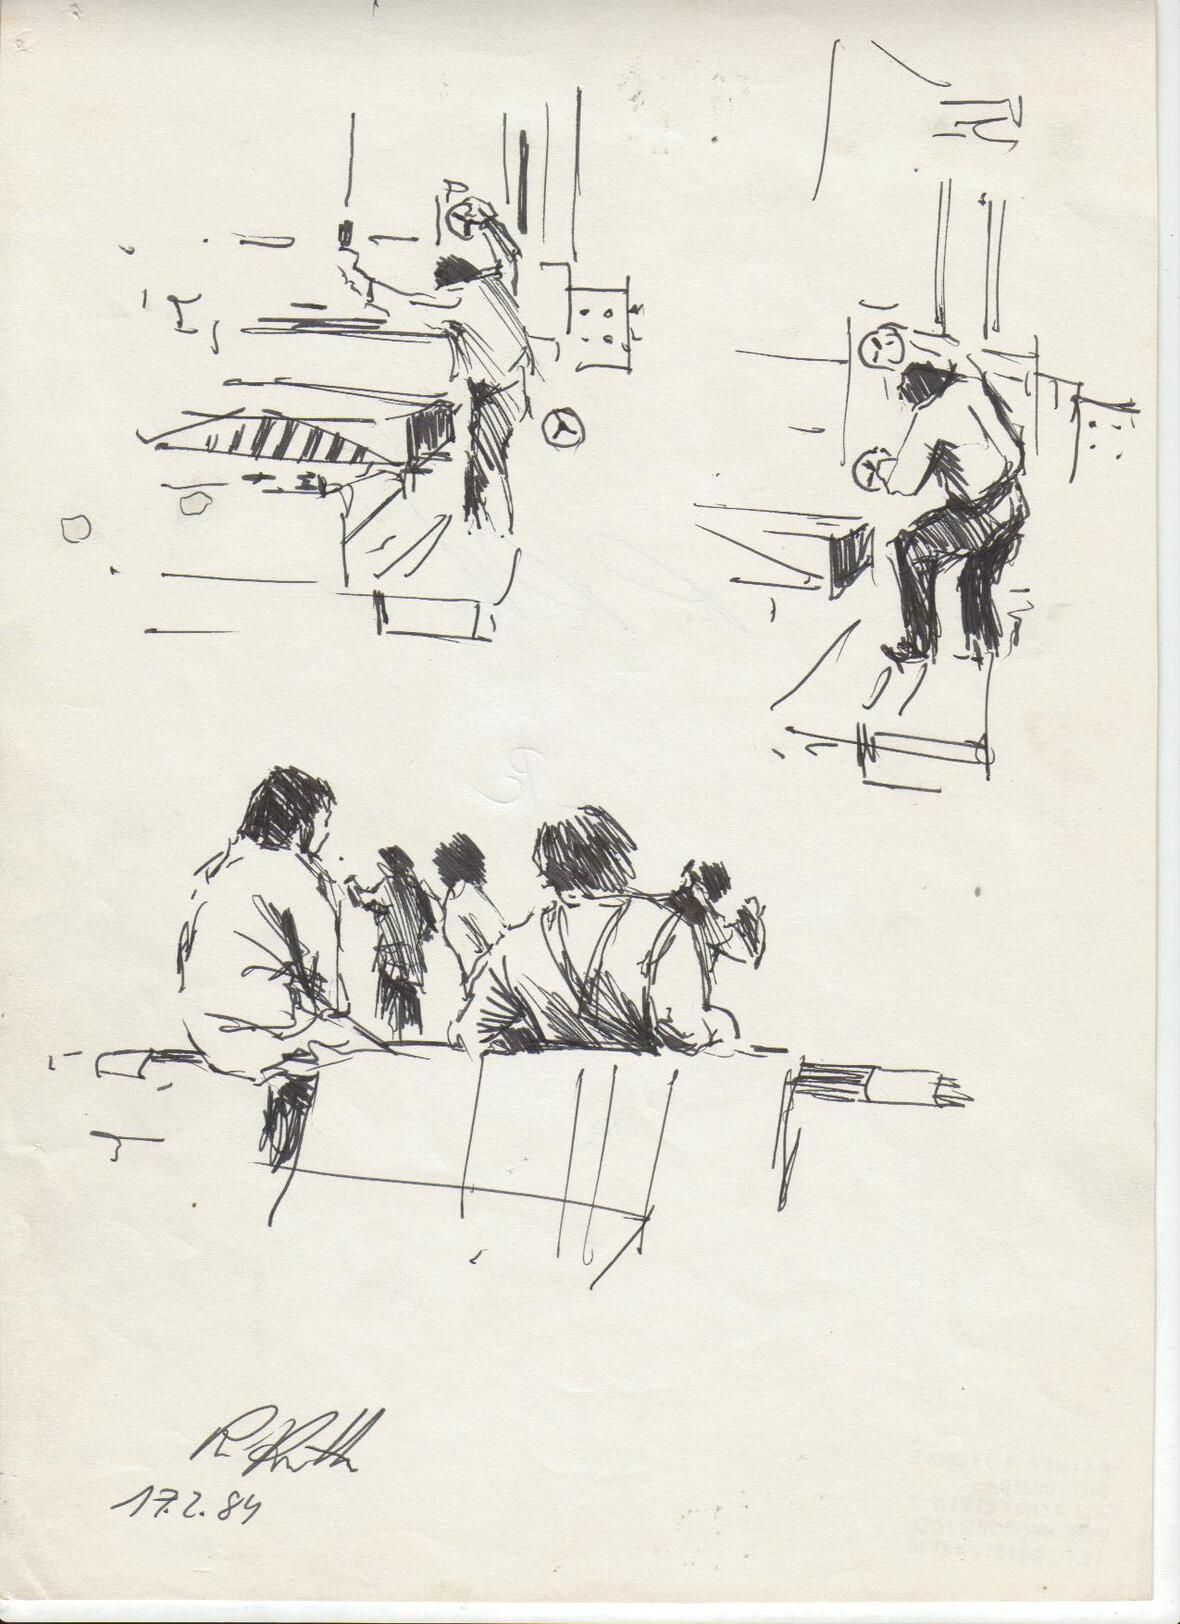 industrie-bmw-1984-02-17-zeichnung-arbeiter-presse-pause